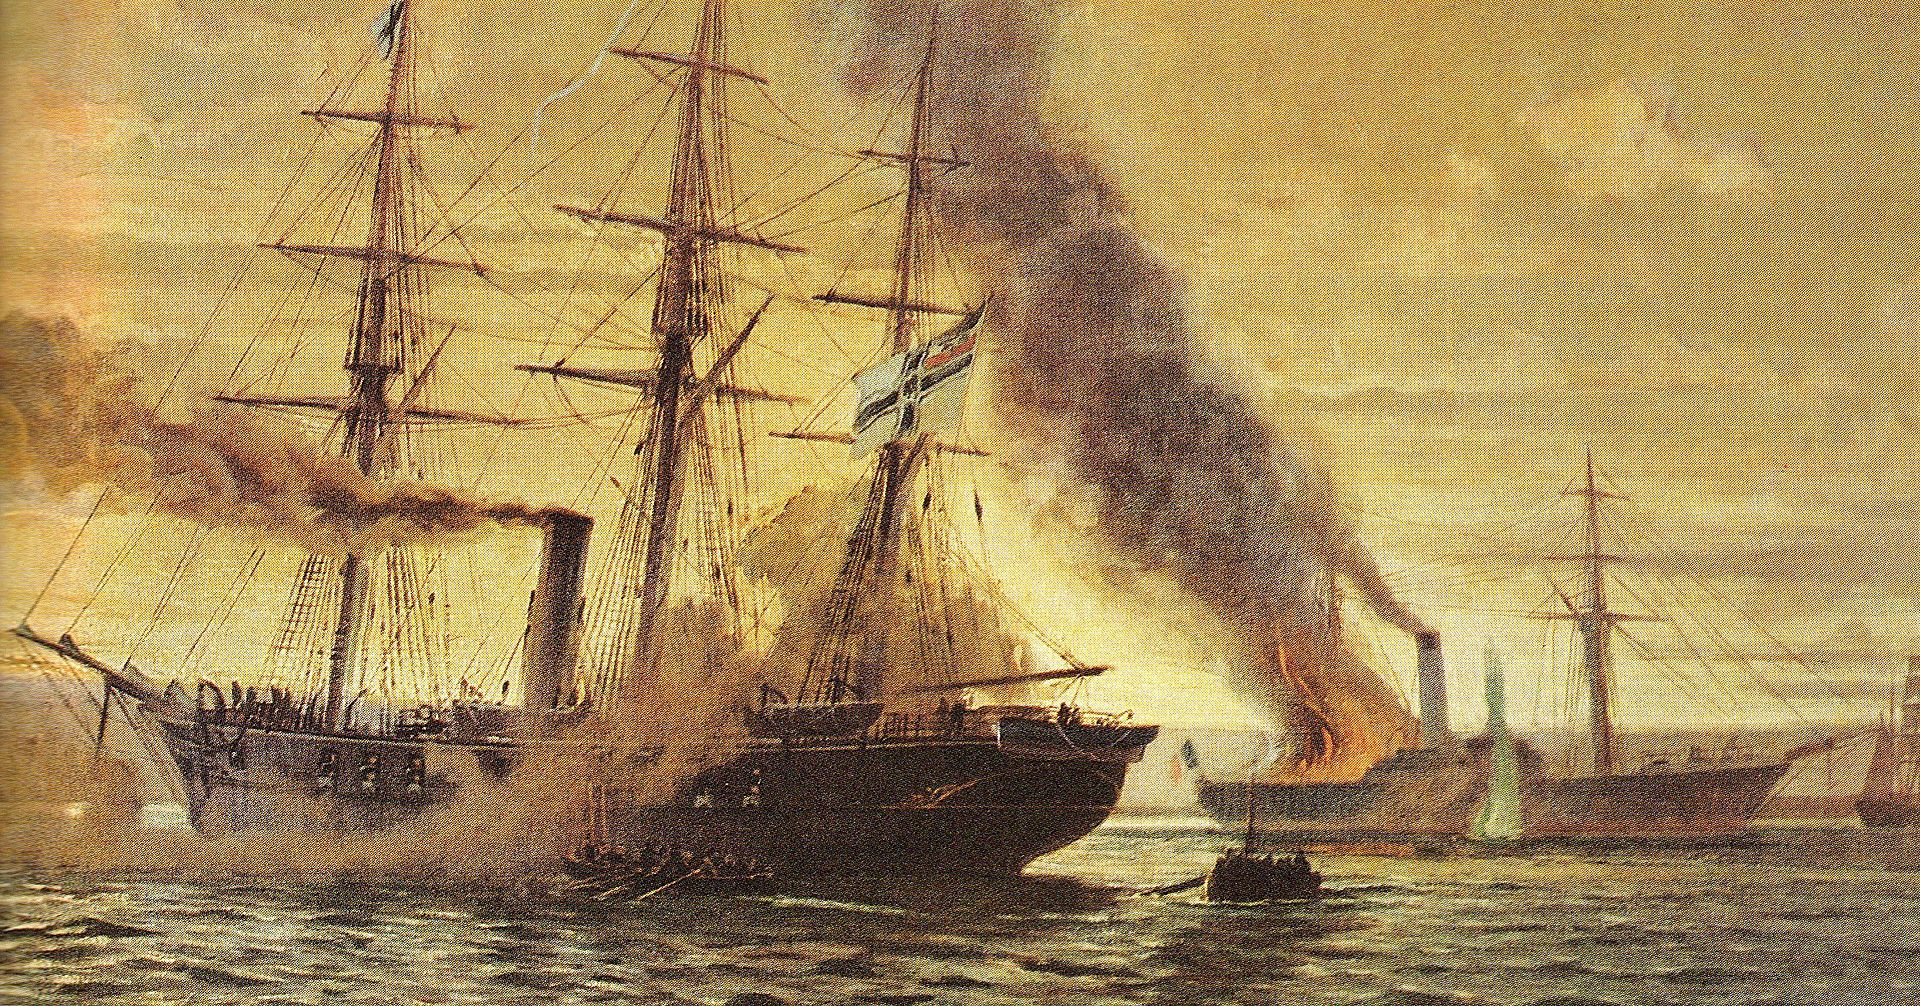 Augusta niszczy zatrzymany francuski statek podczas wojny 1870-1871.